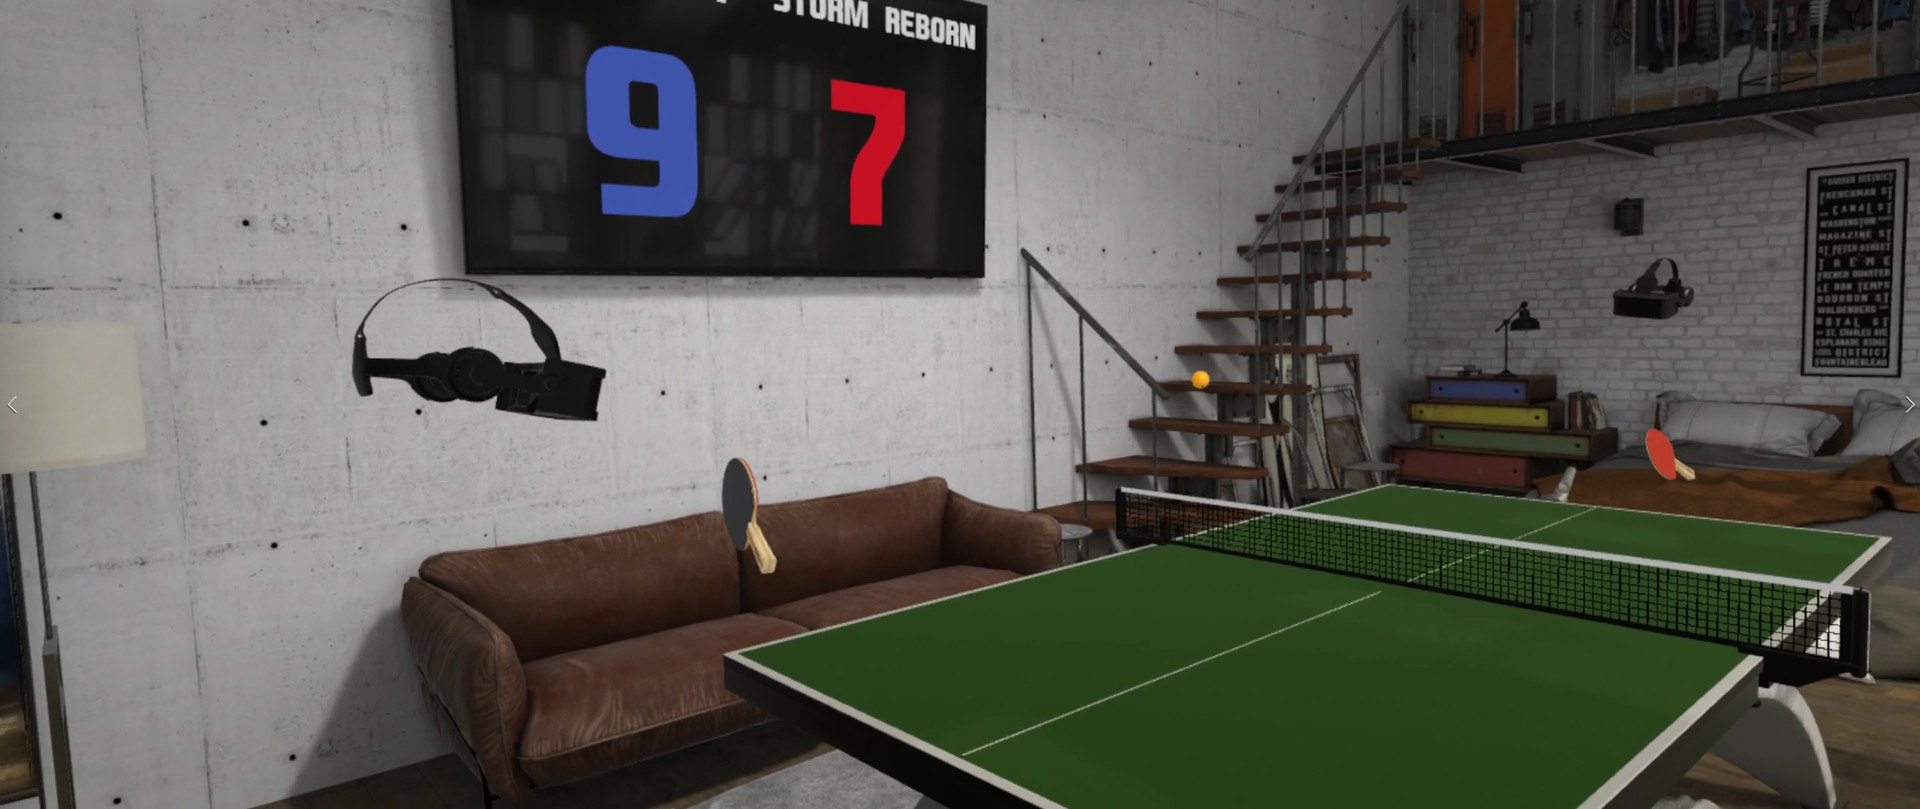 Eleven: Table Tennis VR Steam Altergift